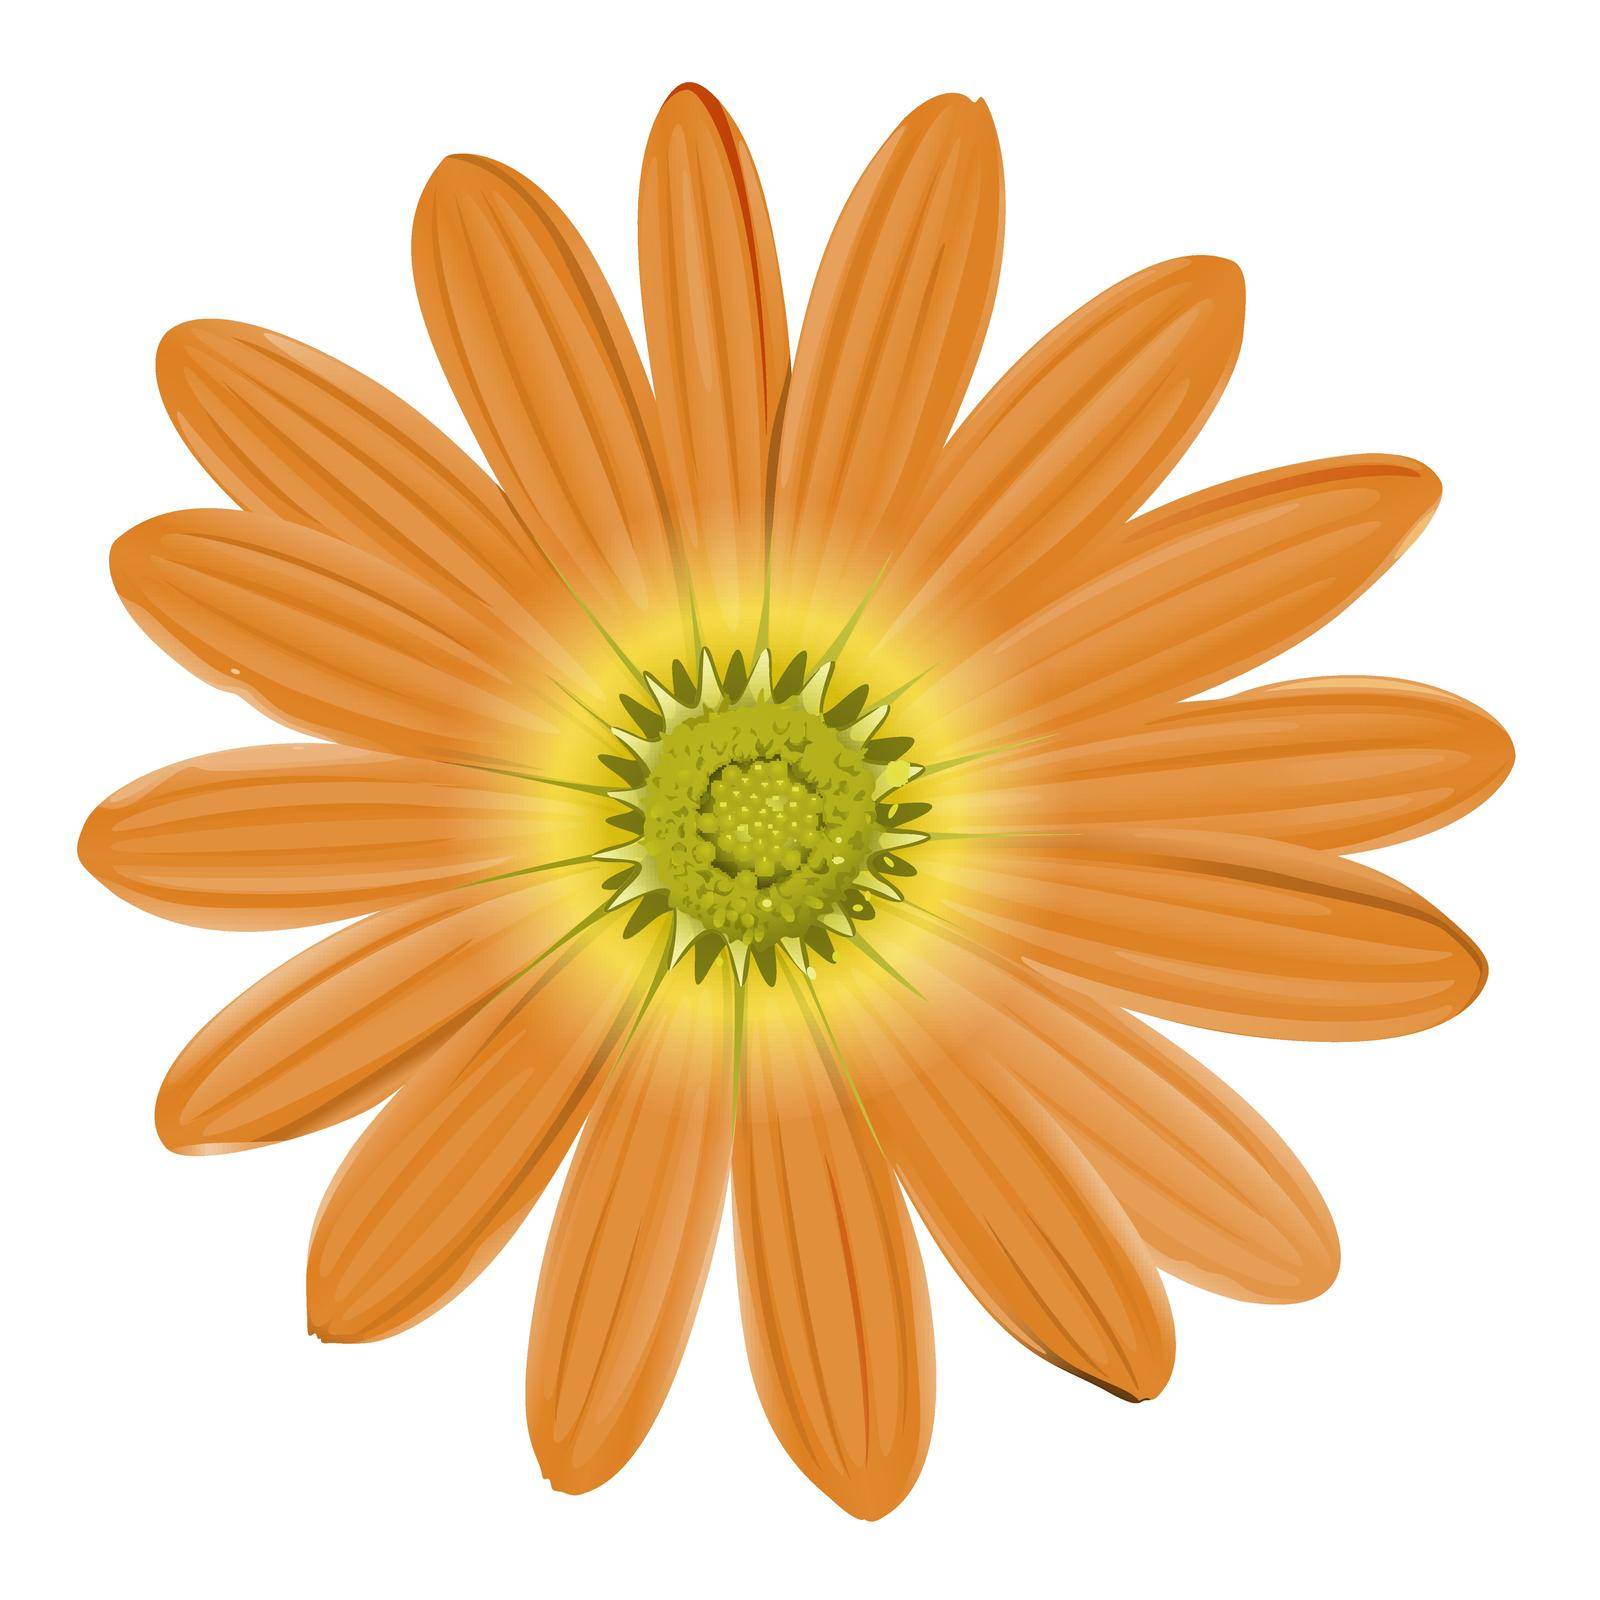 Illustration of a close up orange flower